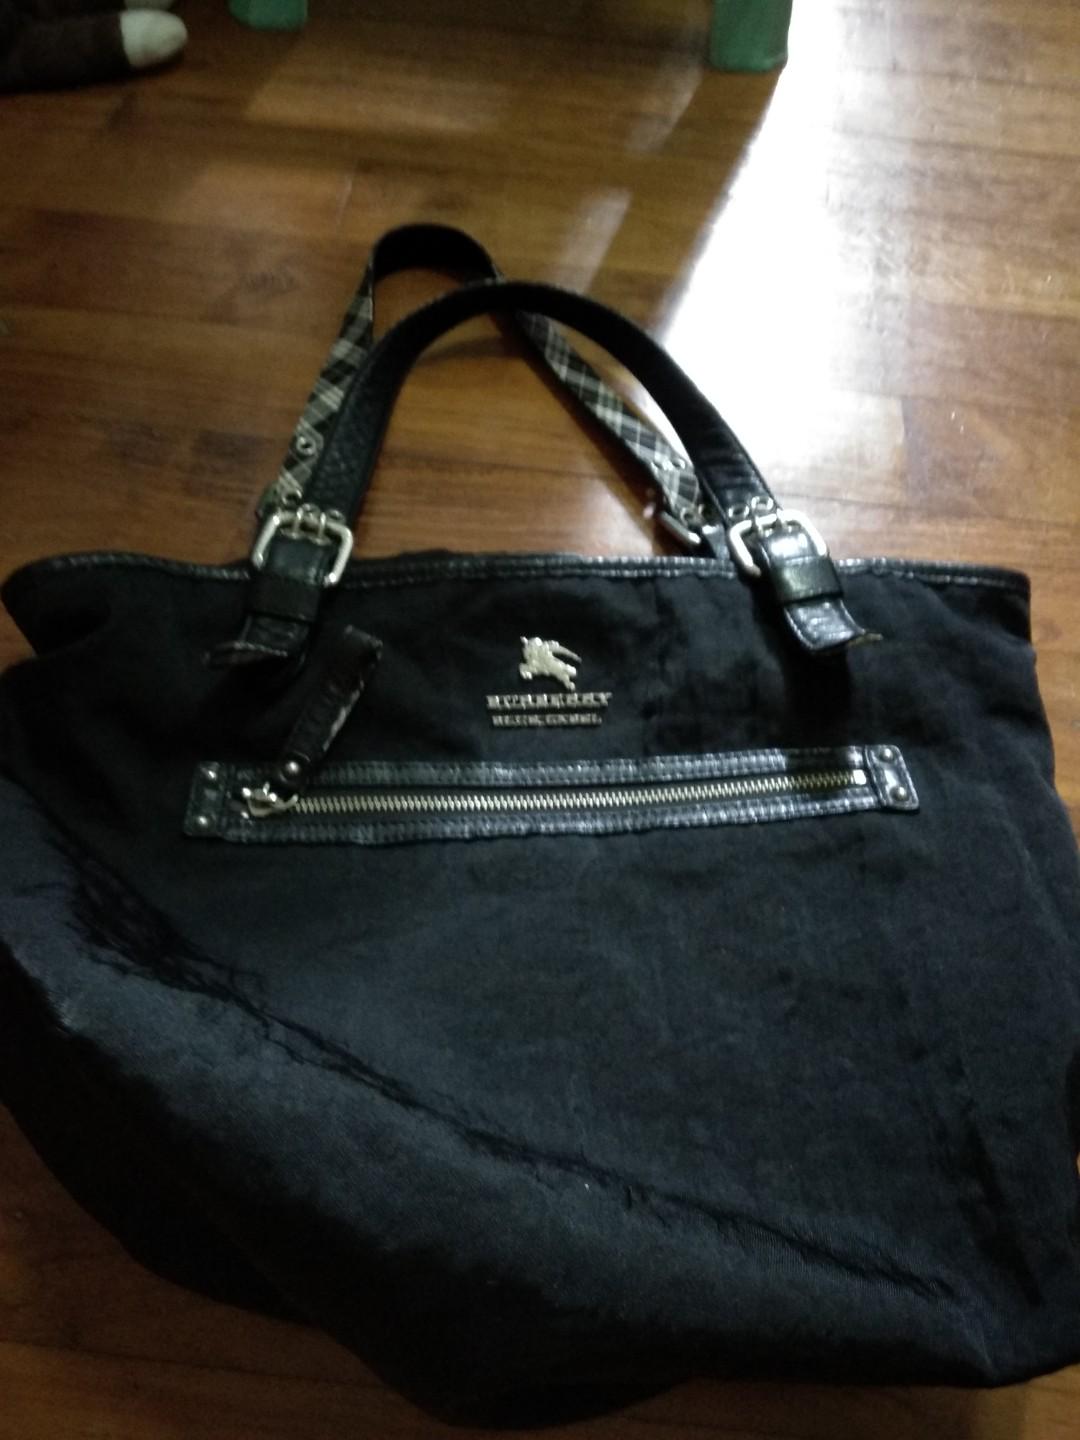 burberry cloth bag